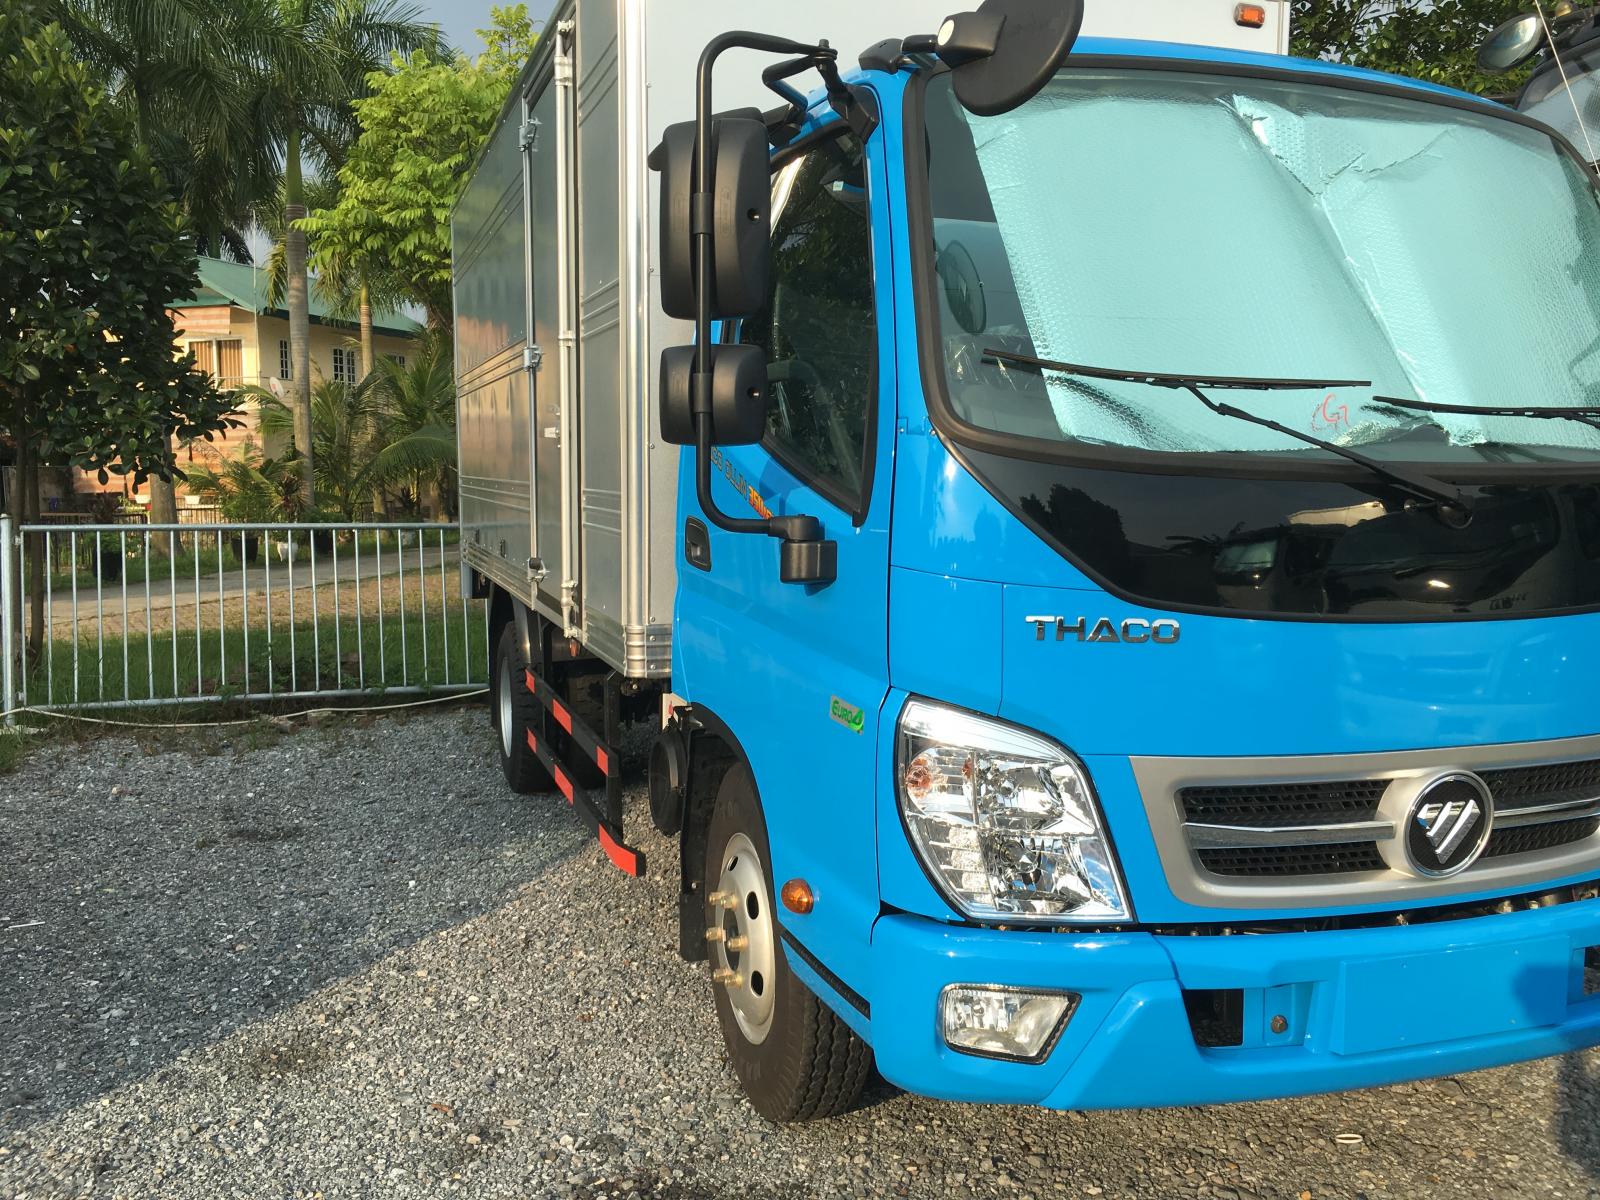 Xe tải Thaco OLLIN 350 E4 thùng kín 2019 giá rẻ liên hệ 096.96.44.128